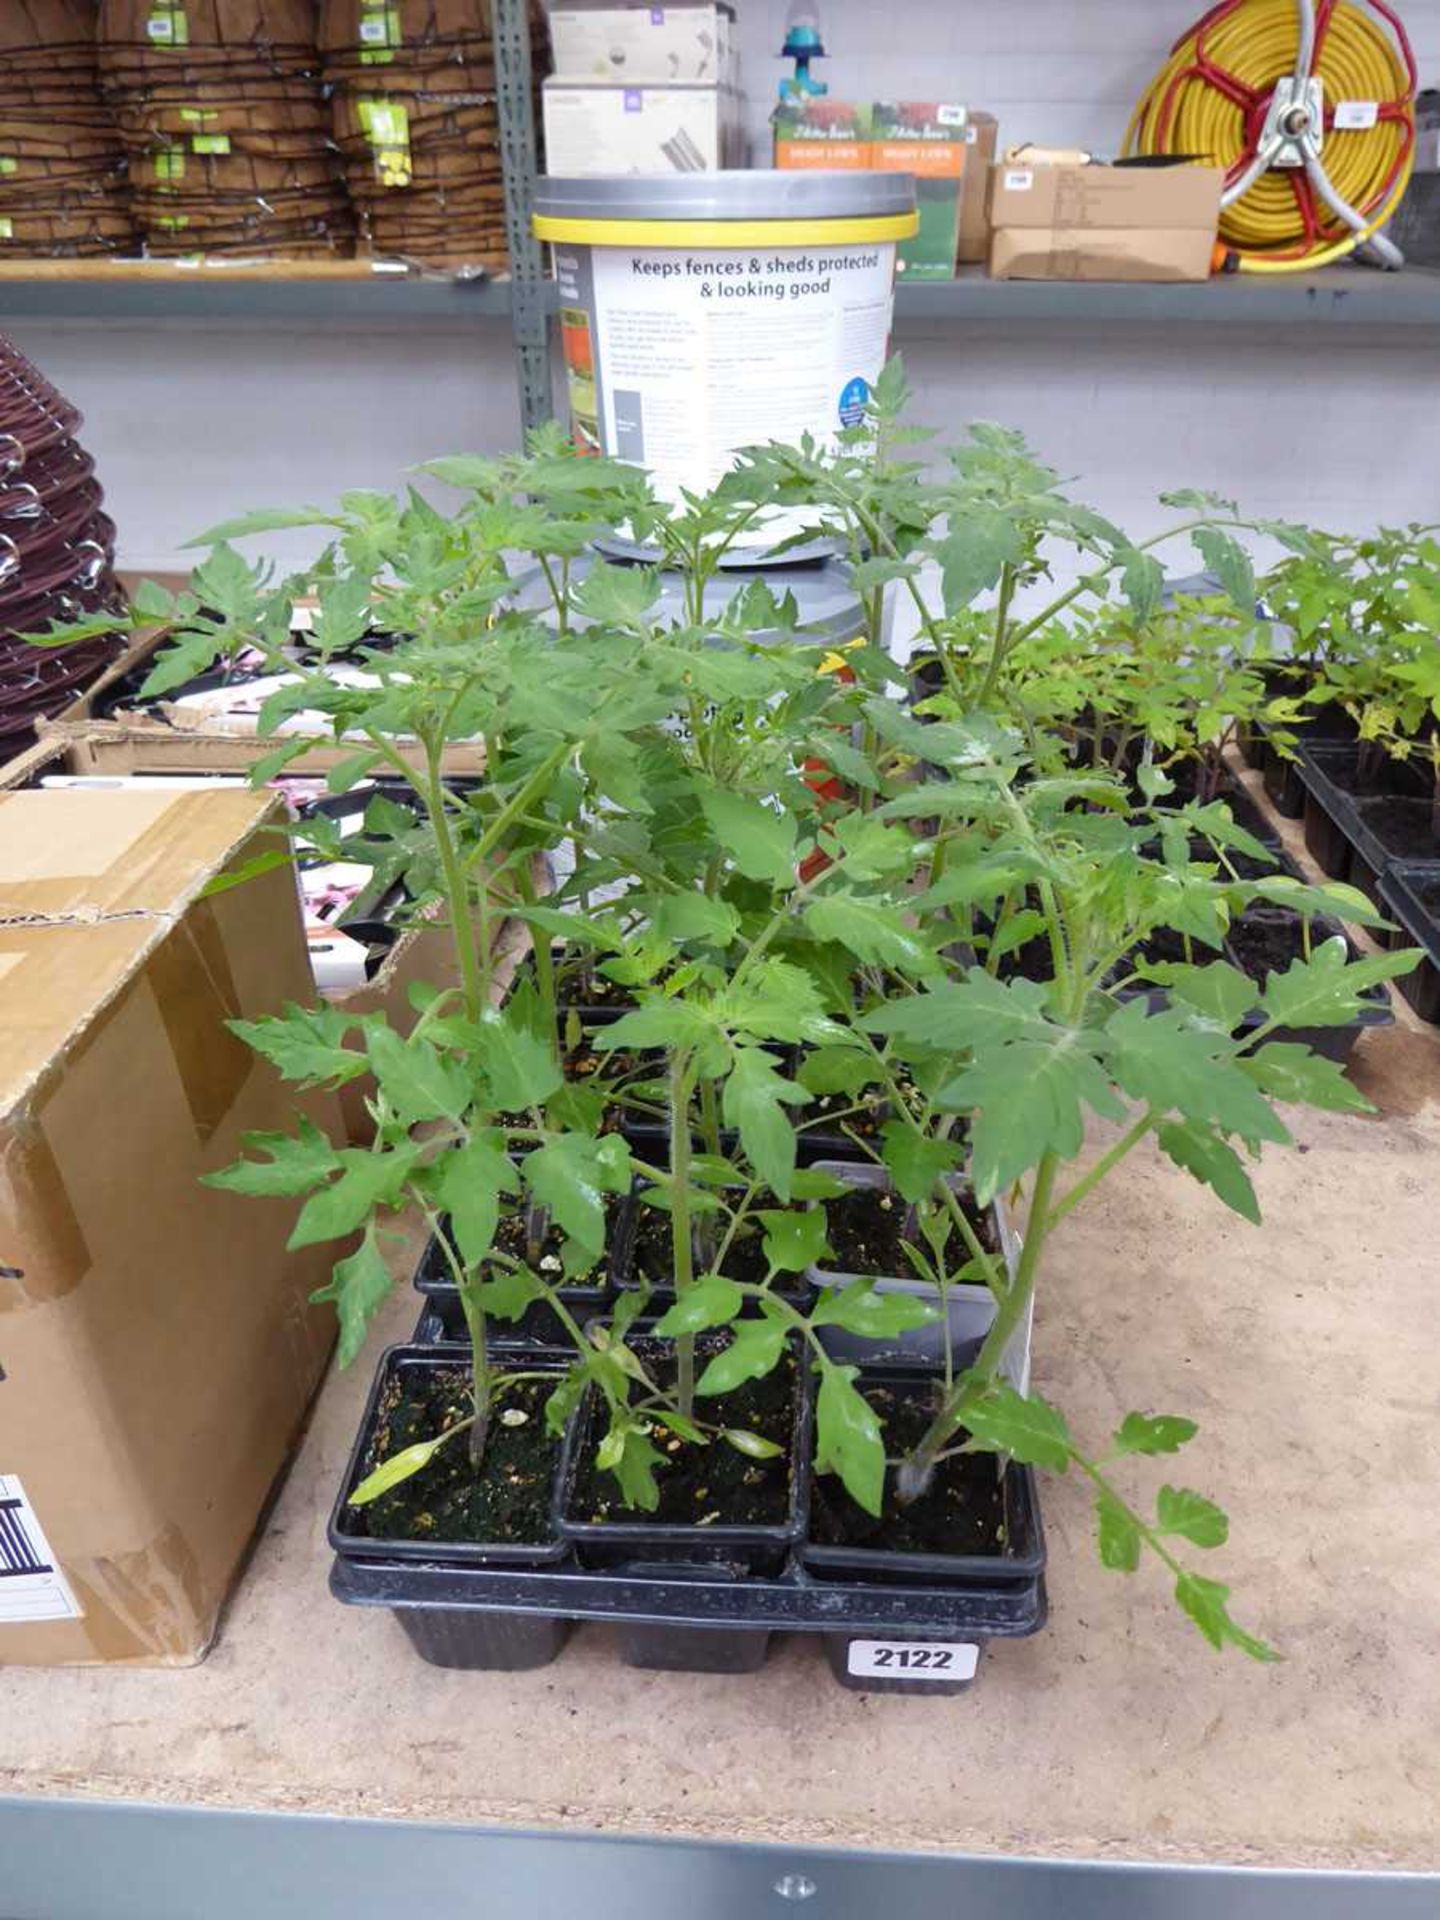 2 trays containing 12 Gardener's Delight tomato plants